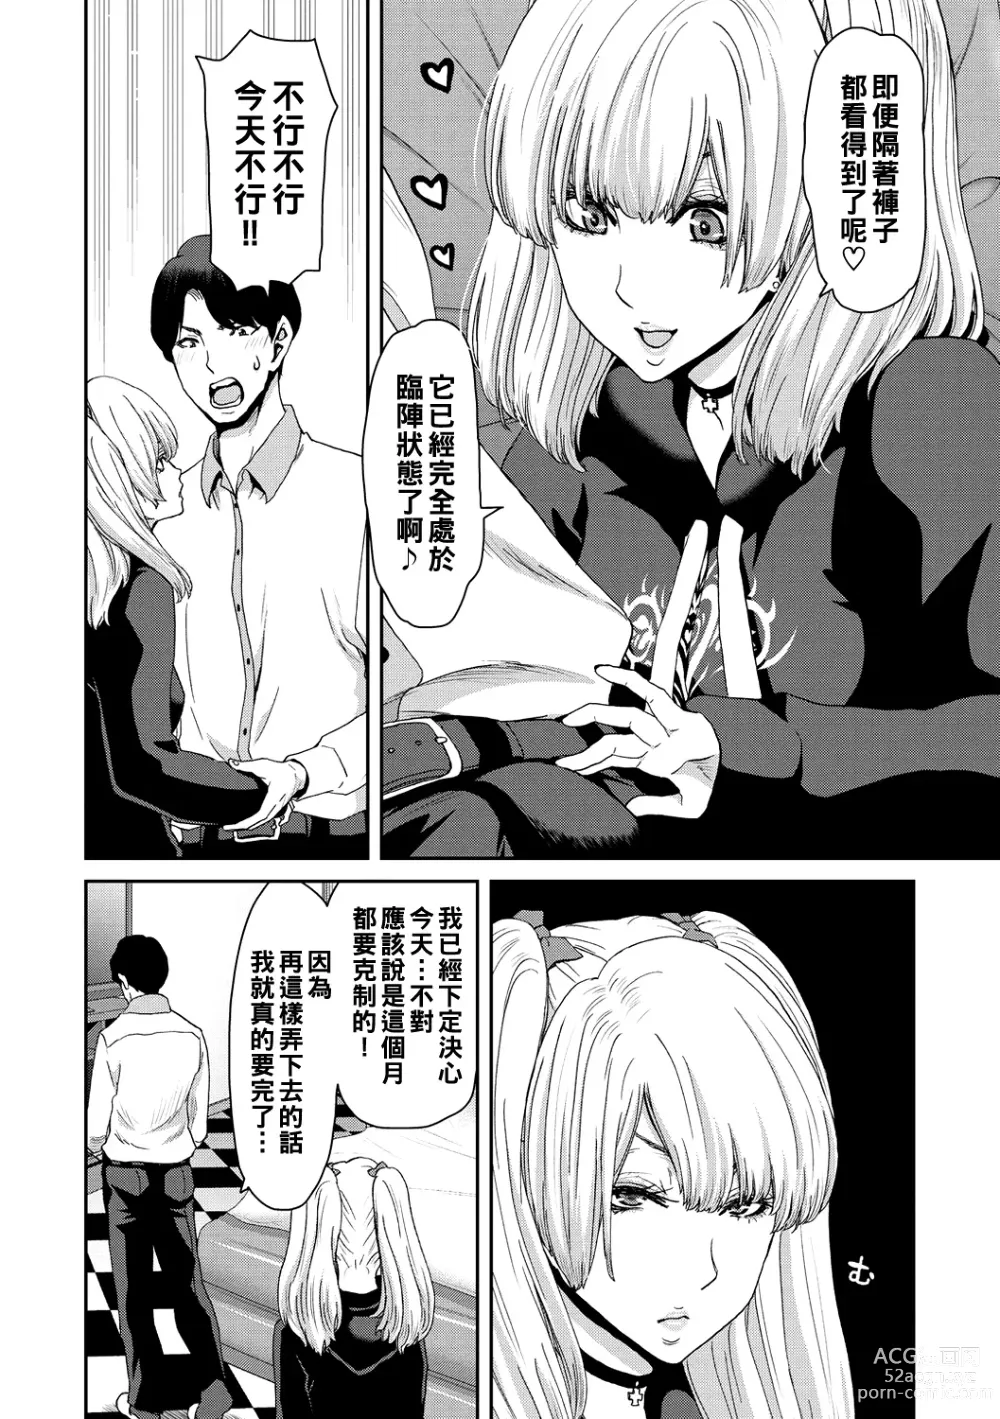 Page 12 of manga Shiyokka Hametsu SEX